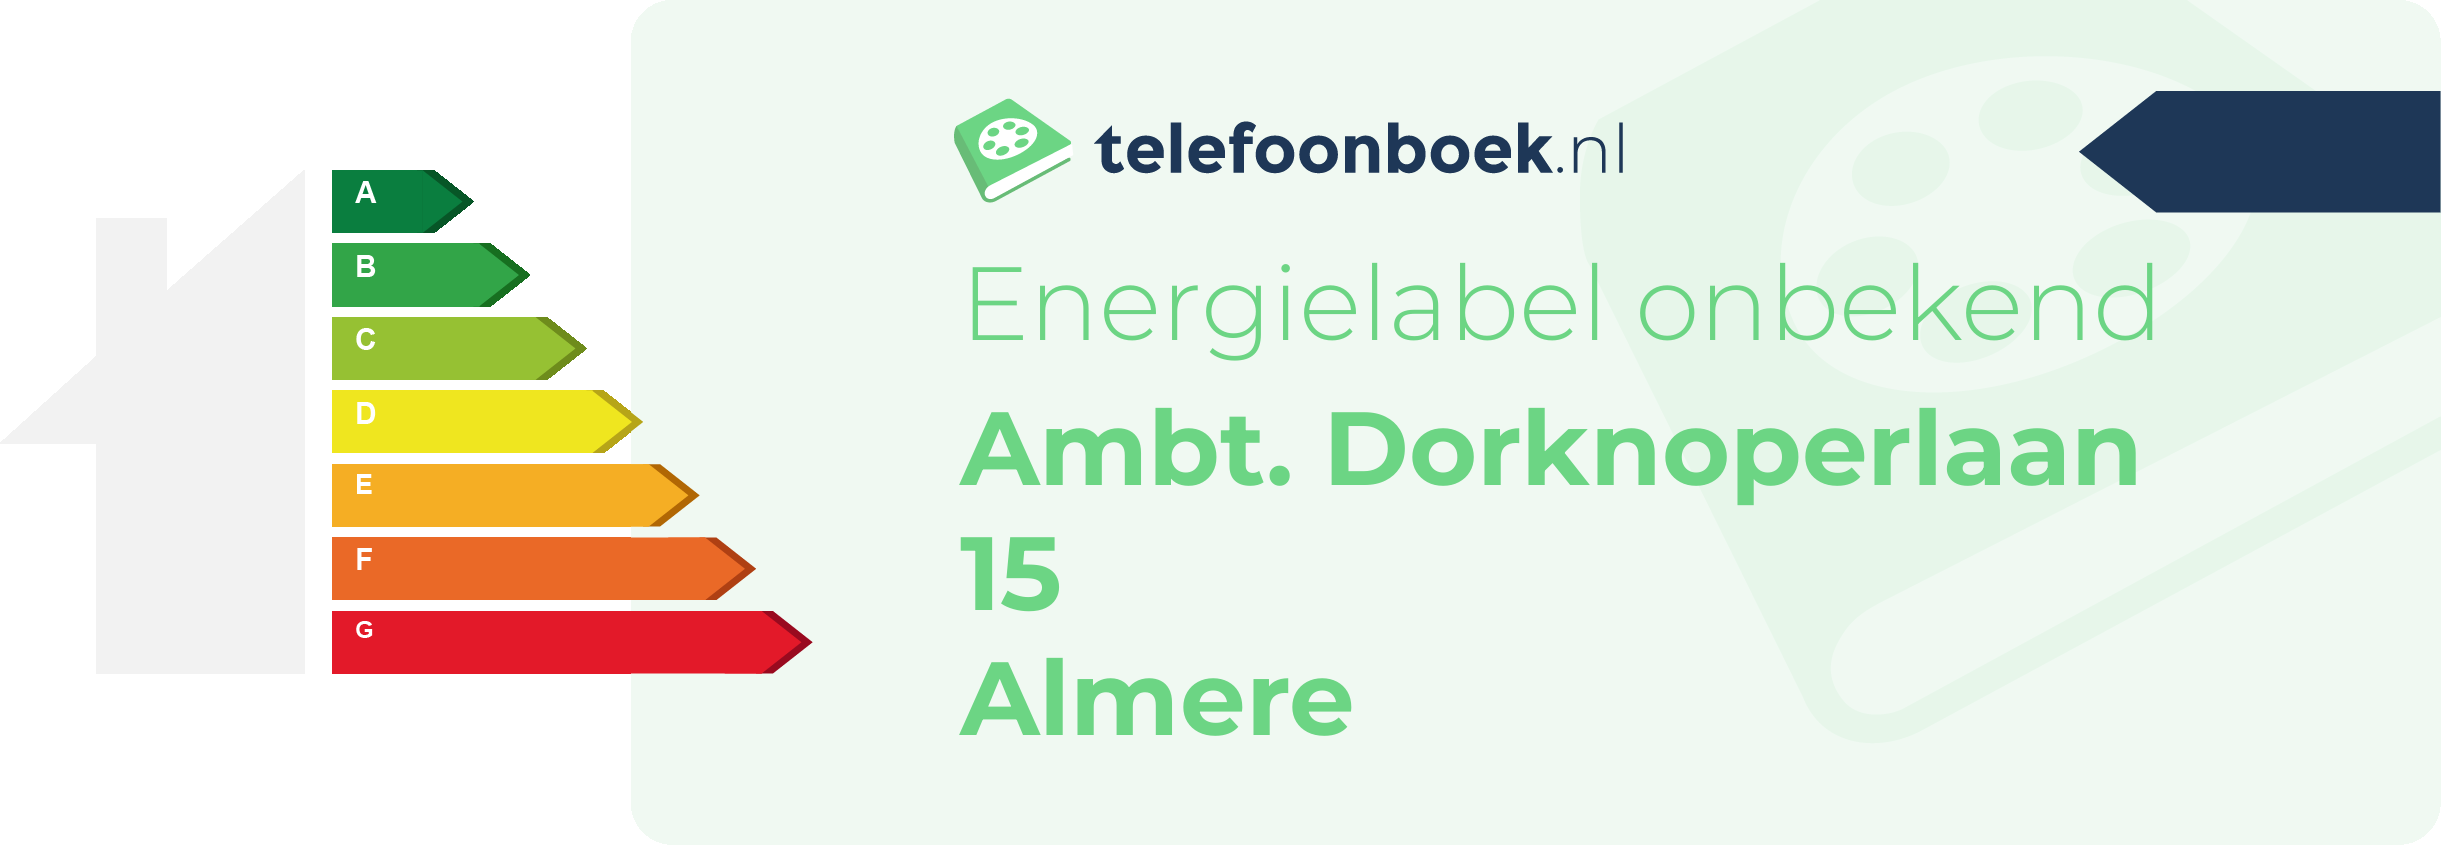 Energielabel Ambt. Dorknoperlaan 15 Almere